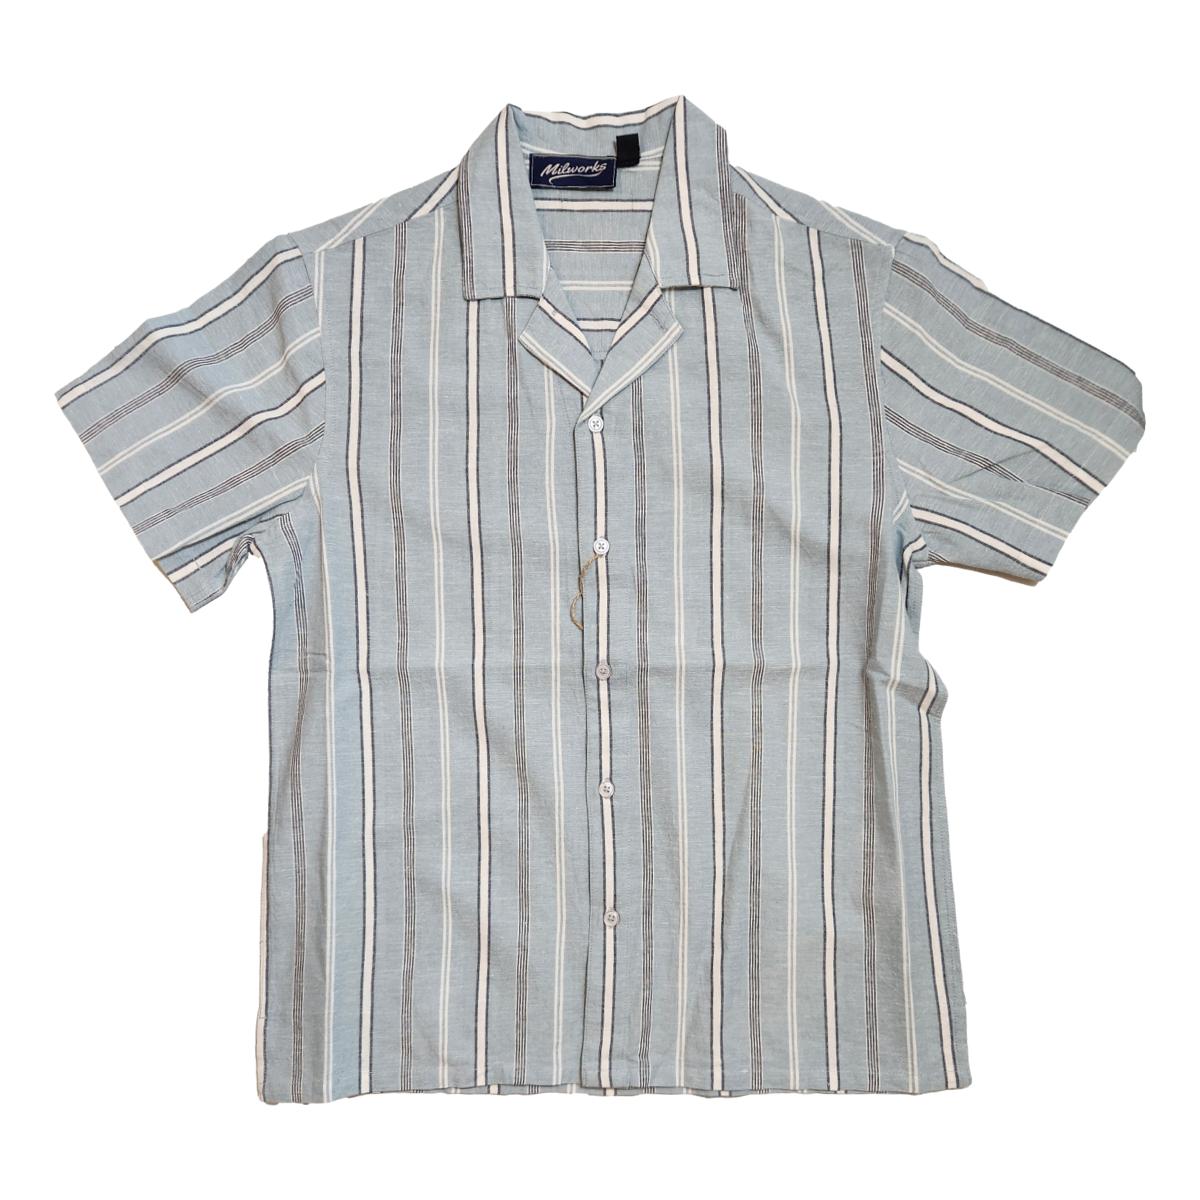 Cotton Linen Striped Camp Shirt Lt. Blue - Shirts